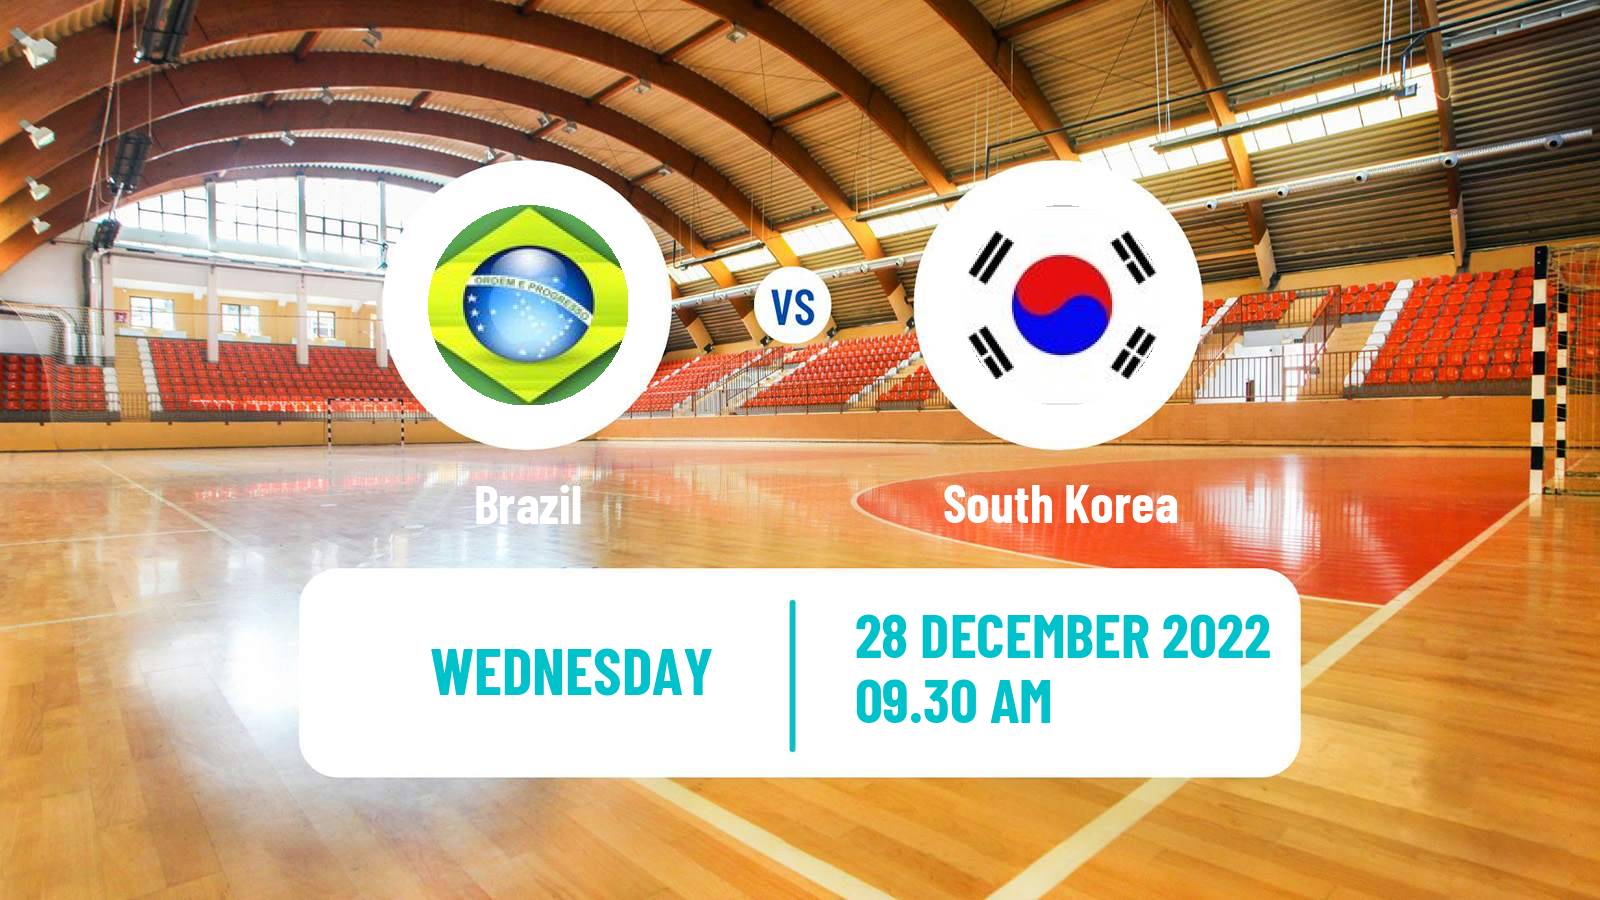 Handball Friendly International Handball Brazil - South Korea